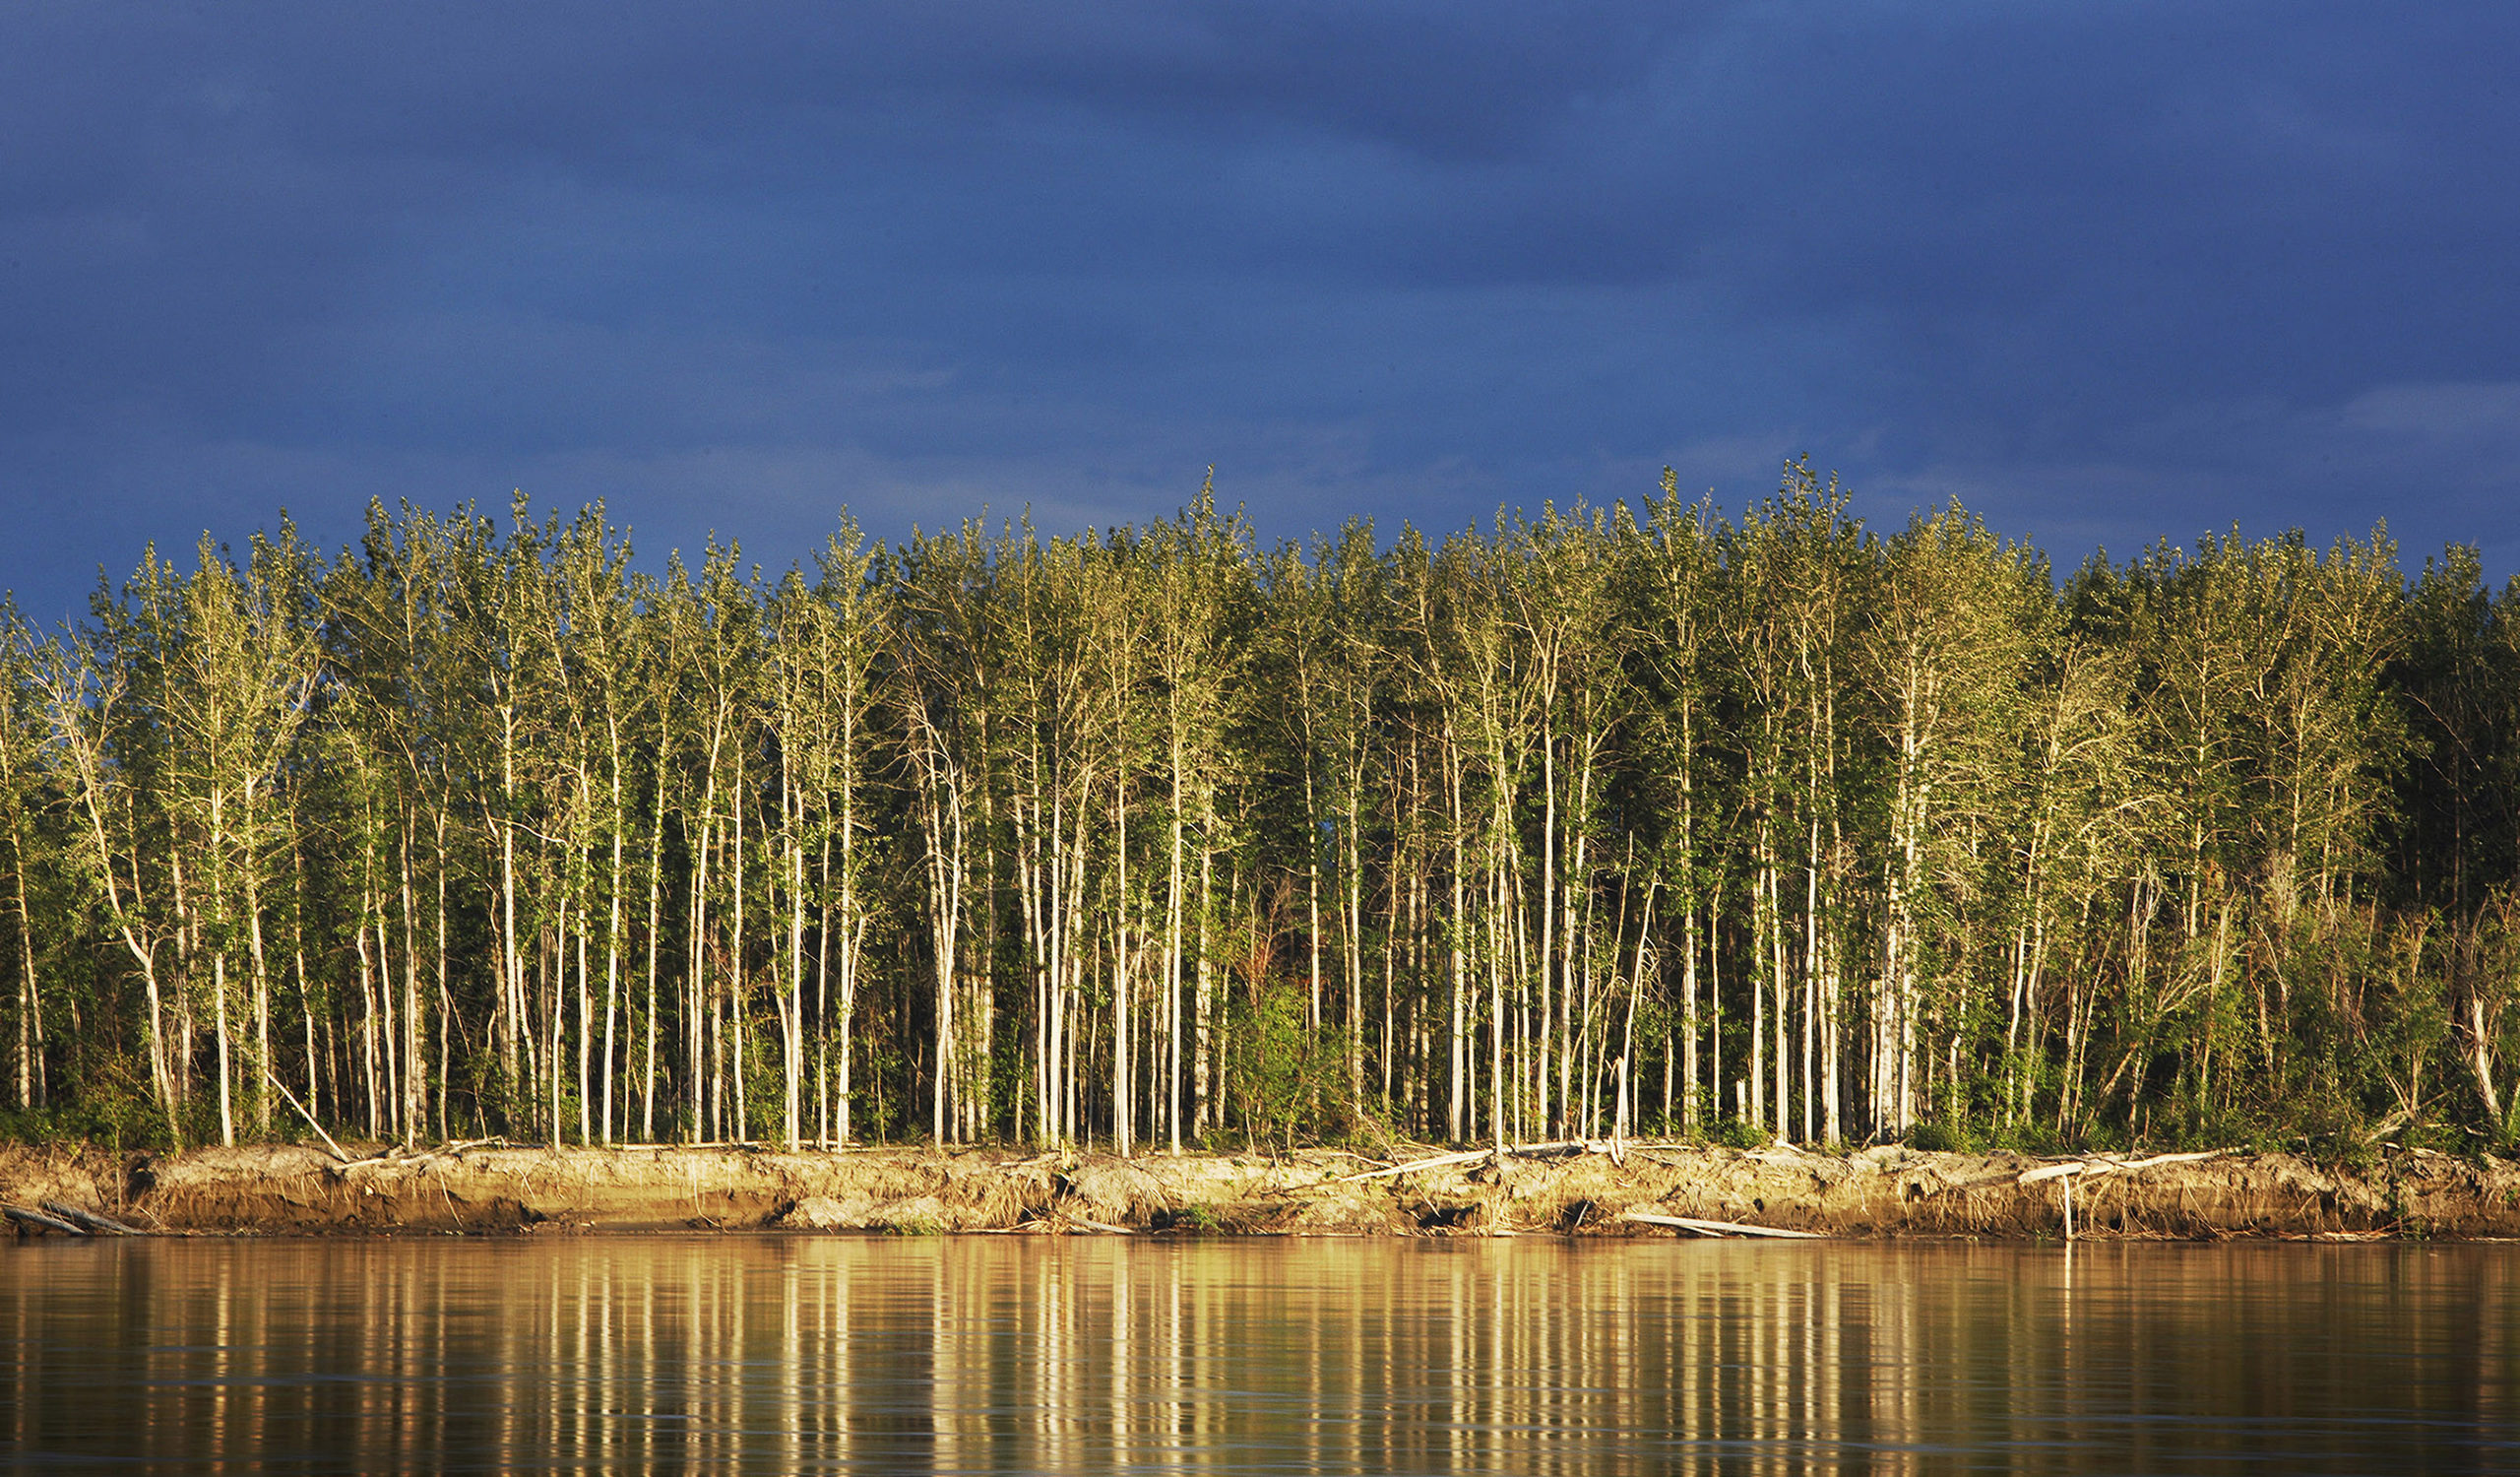 Foto der untergehenden Sonne auf den Birken an den Ufern des Yukon River. Der Yukon River fließt von seiner Quelle in Britisch-Kolumbien (Kanada) durch das Yukon Territory, bevor er die Grenze zu Alaska überquert und in etwa 3000 km Entfernung in das Beringmeer mündet. Der Fluss hat eine geschichtsträchtige Goldrausch-Geschichte und ist eine der schönsten Wasserstraßen der Welt. Er ist ein fantastischer Spielplatz für SUPs, Kajakfahrer, Kanufahrer, Jäger und Fischer.